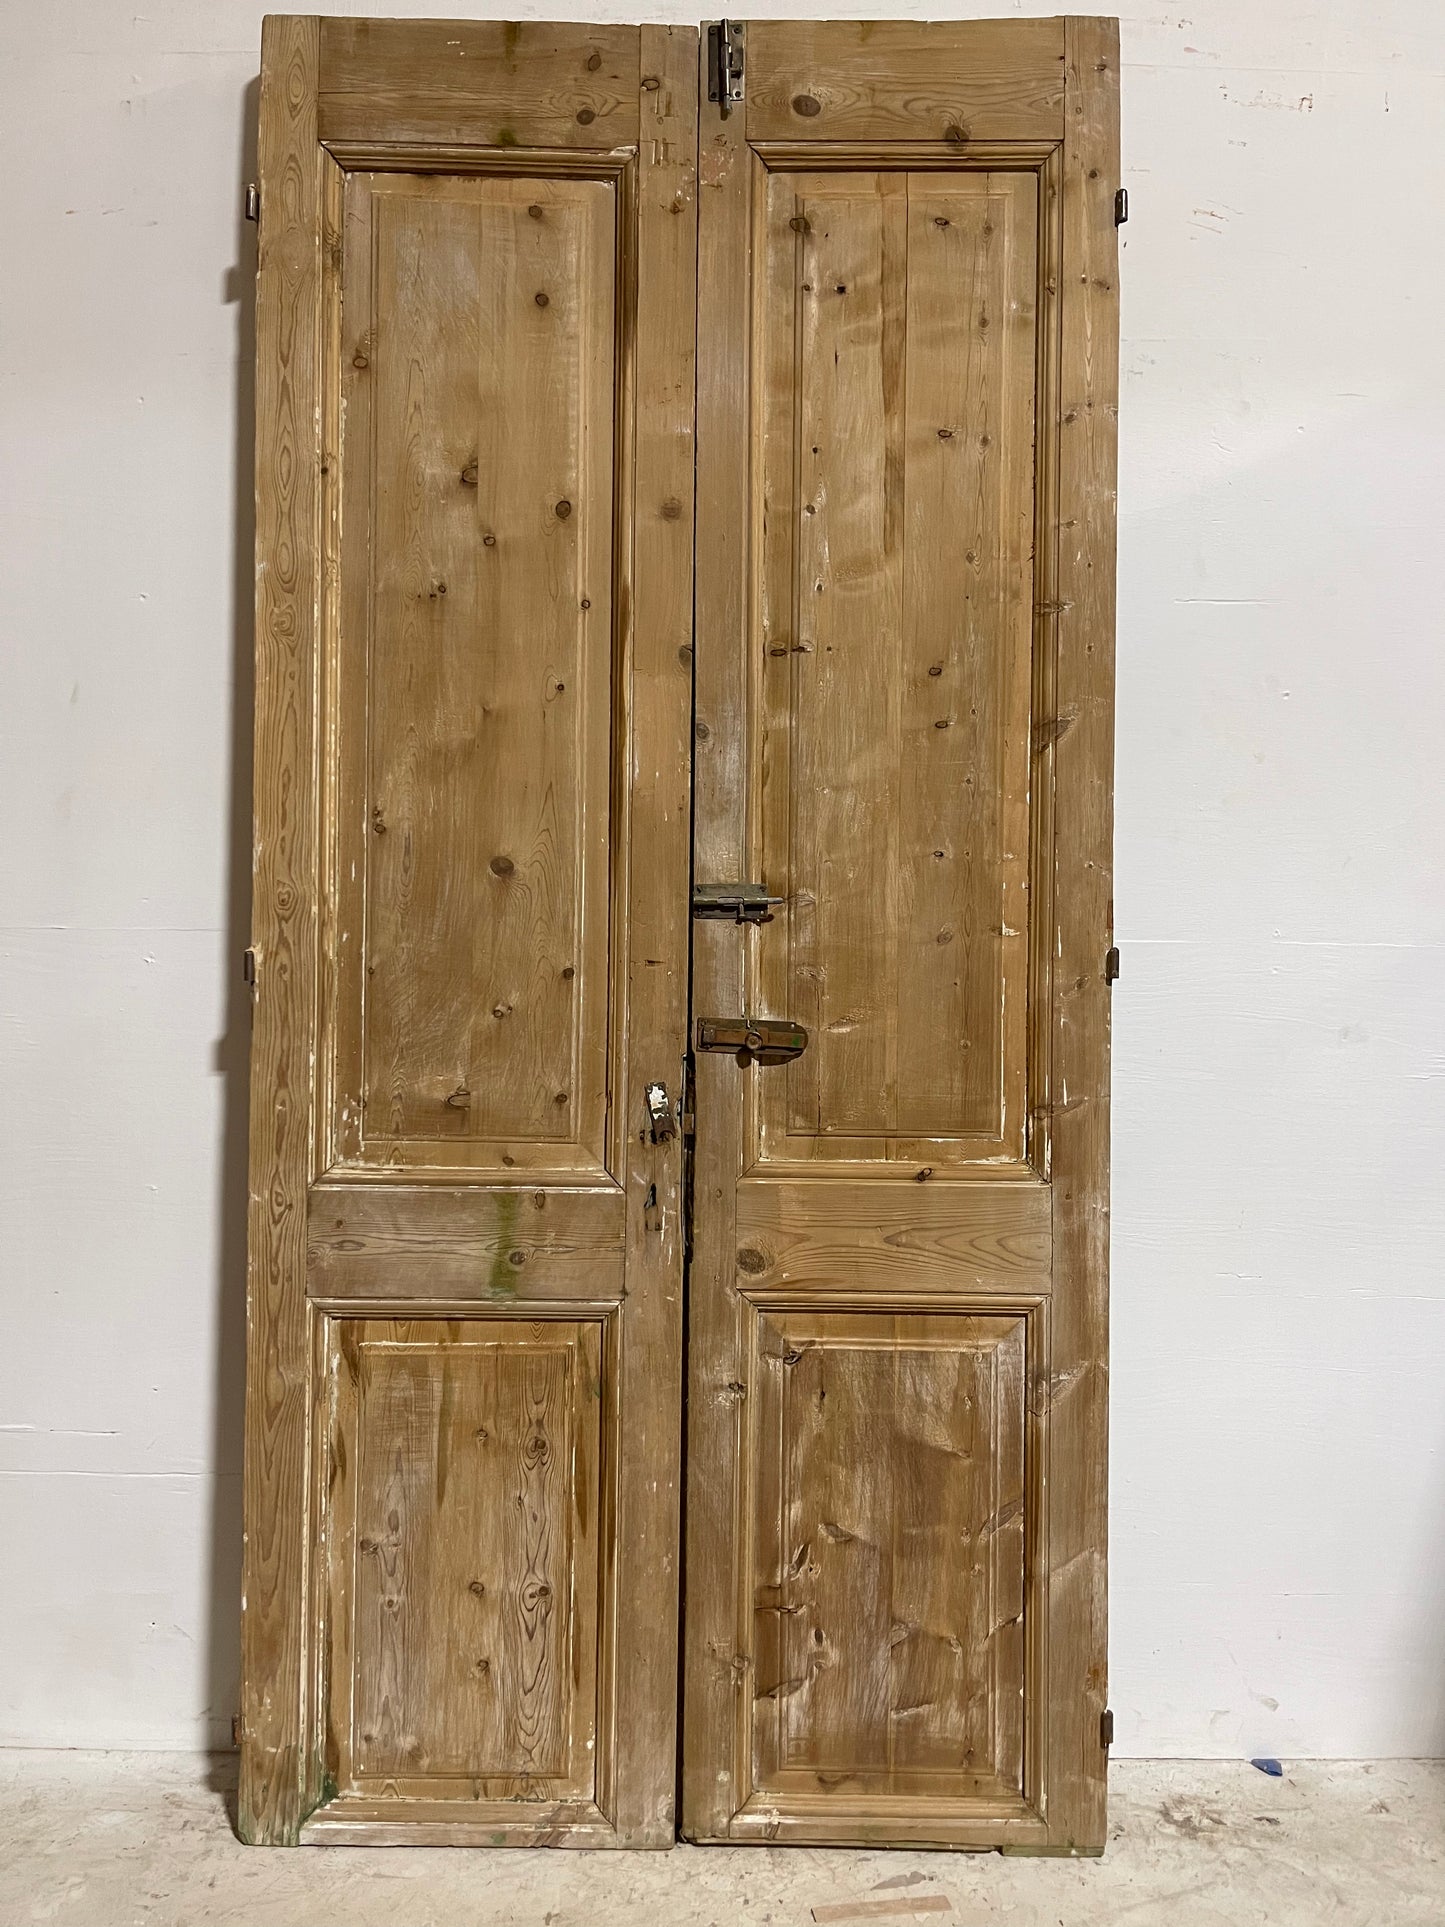 Antique French Panel Doors (93.75x45.25) J005